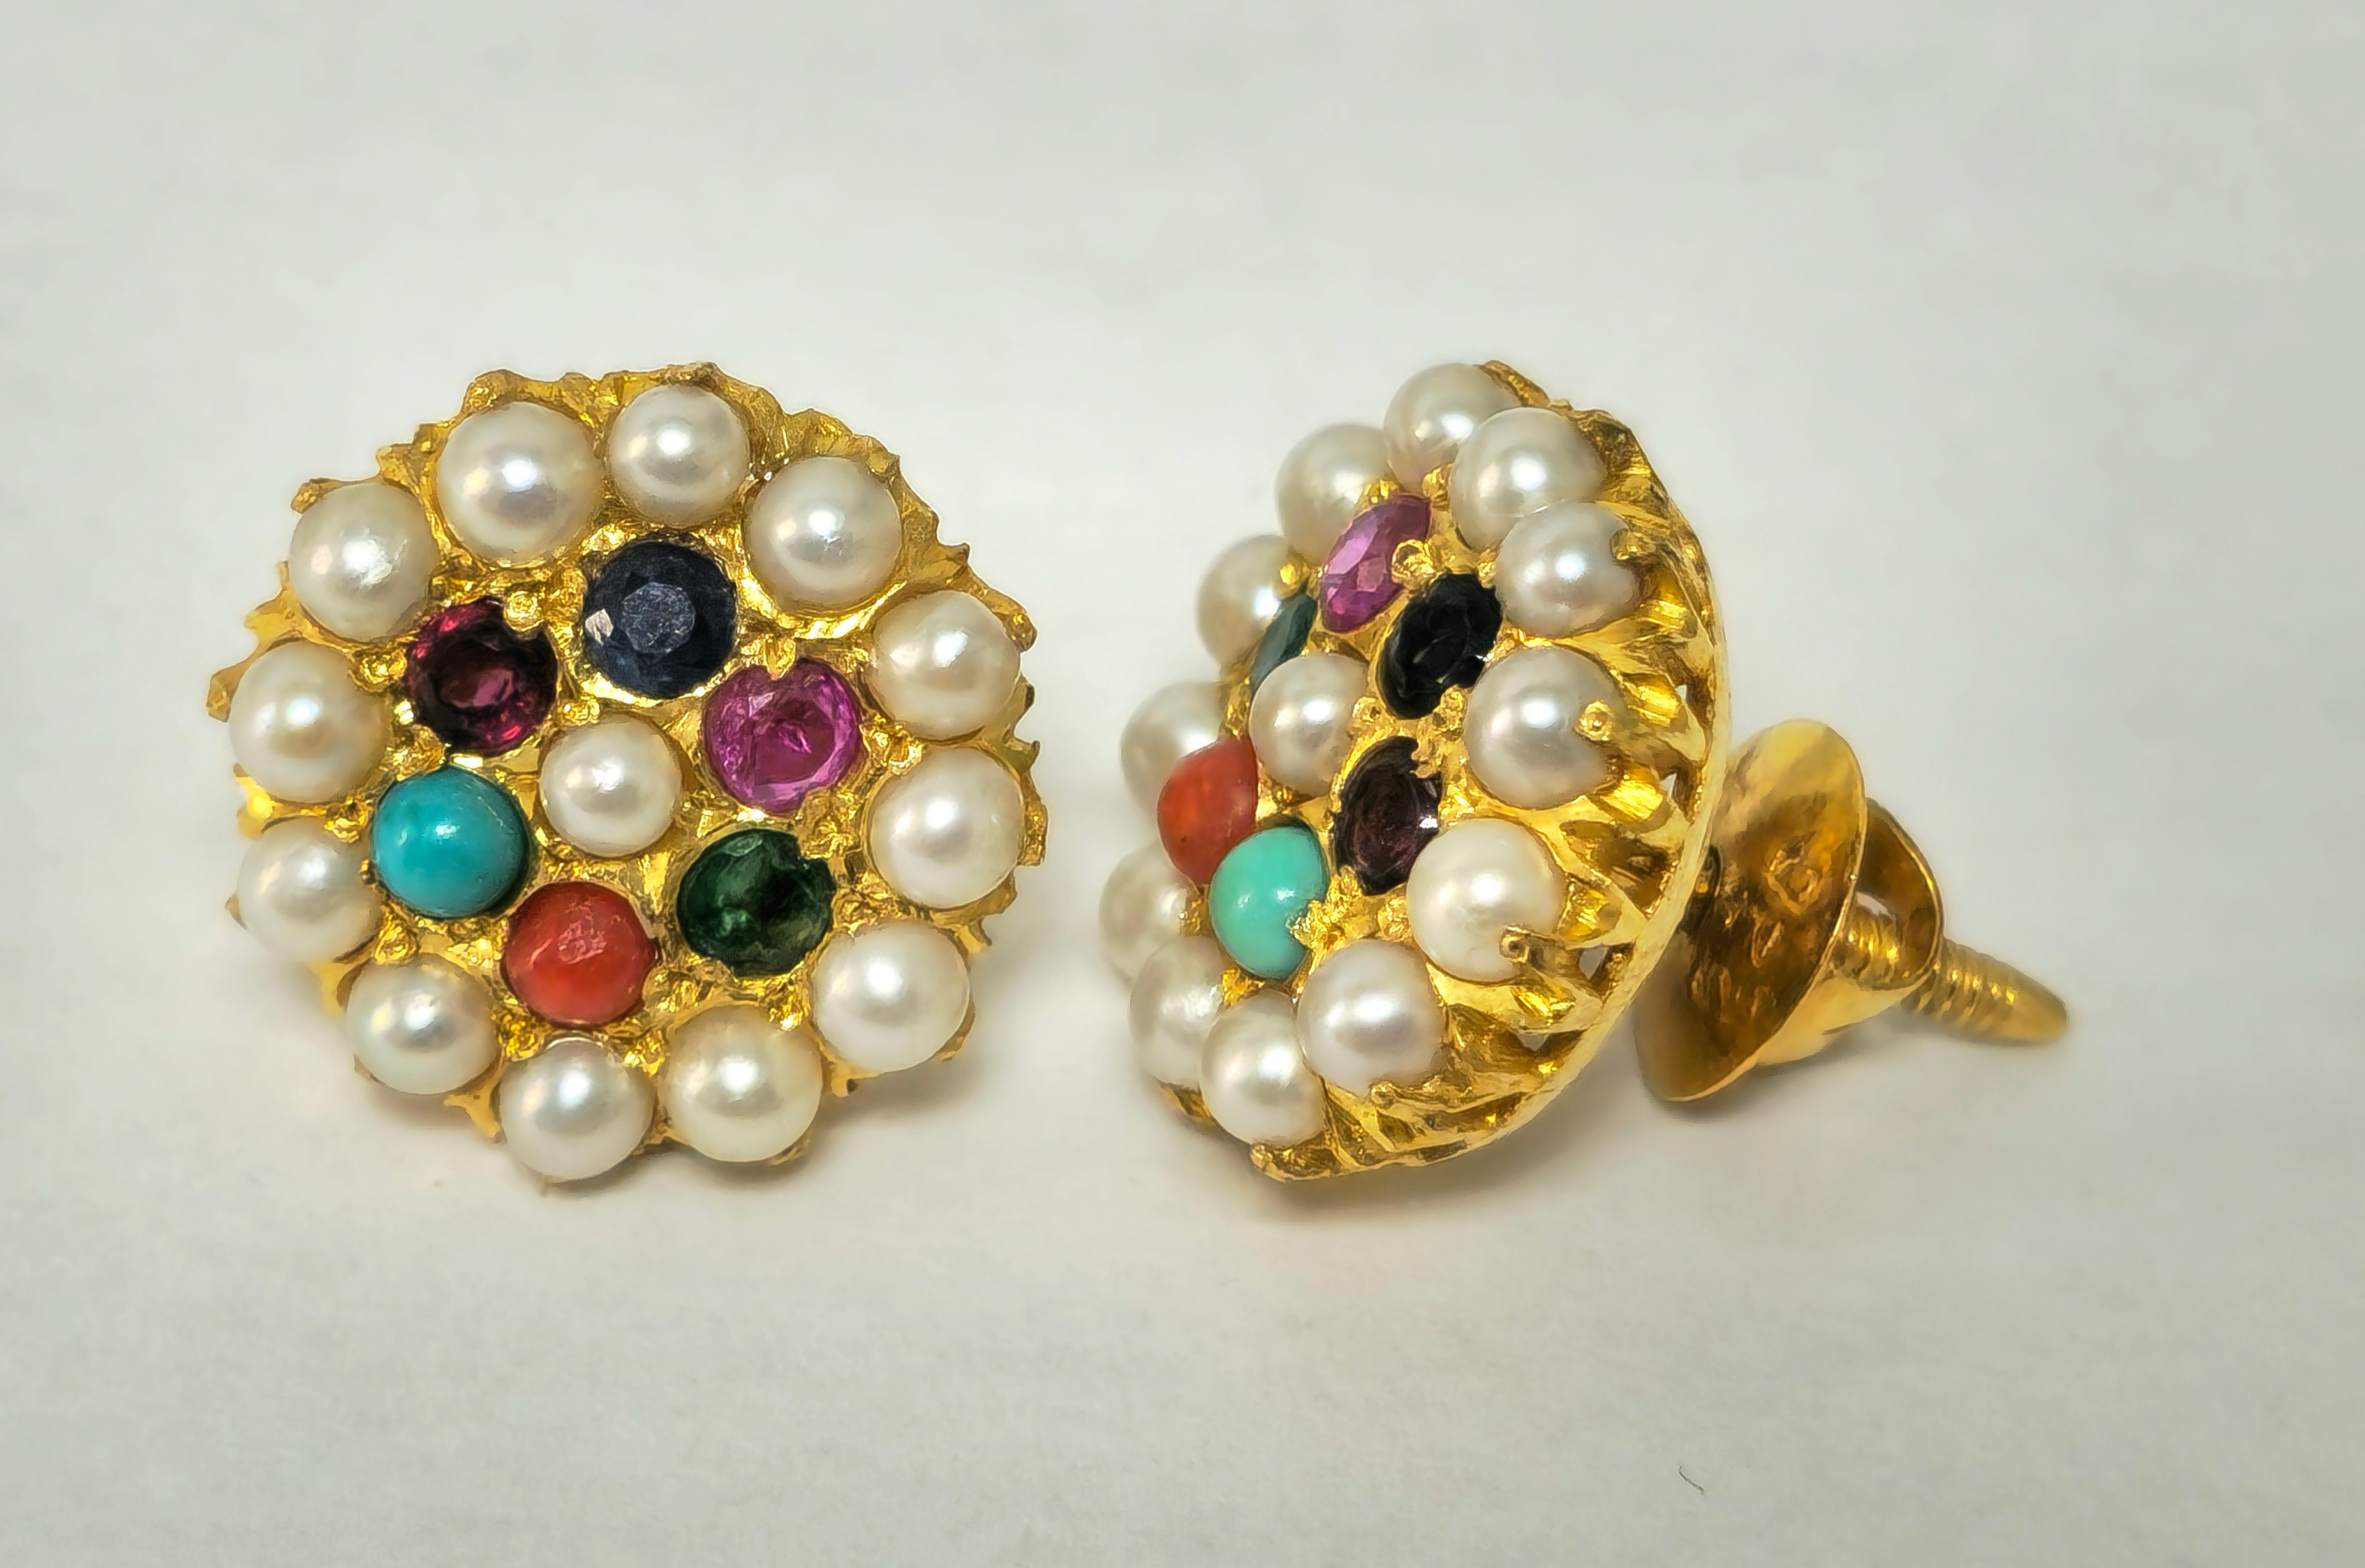 Schmücken Sie sich mit dem exotischen Charme dieser einzigartigen Vintage-Ohrringe, die aus strahlendem 22-karätigem Gelbgold gefertigt sind. Jeder Ohrring ist mit einer bezaubernden Reihe von Edelsteinen besetzt, darunter Perlen, Smaragde, Rubine,